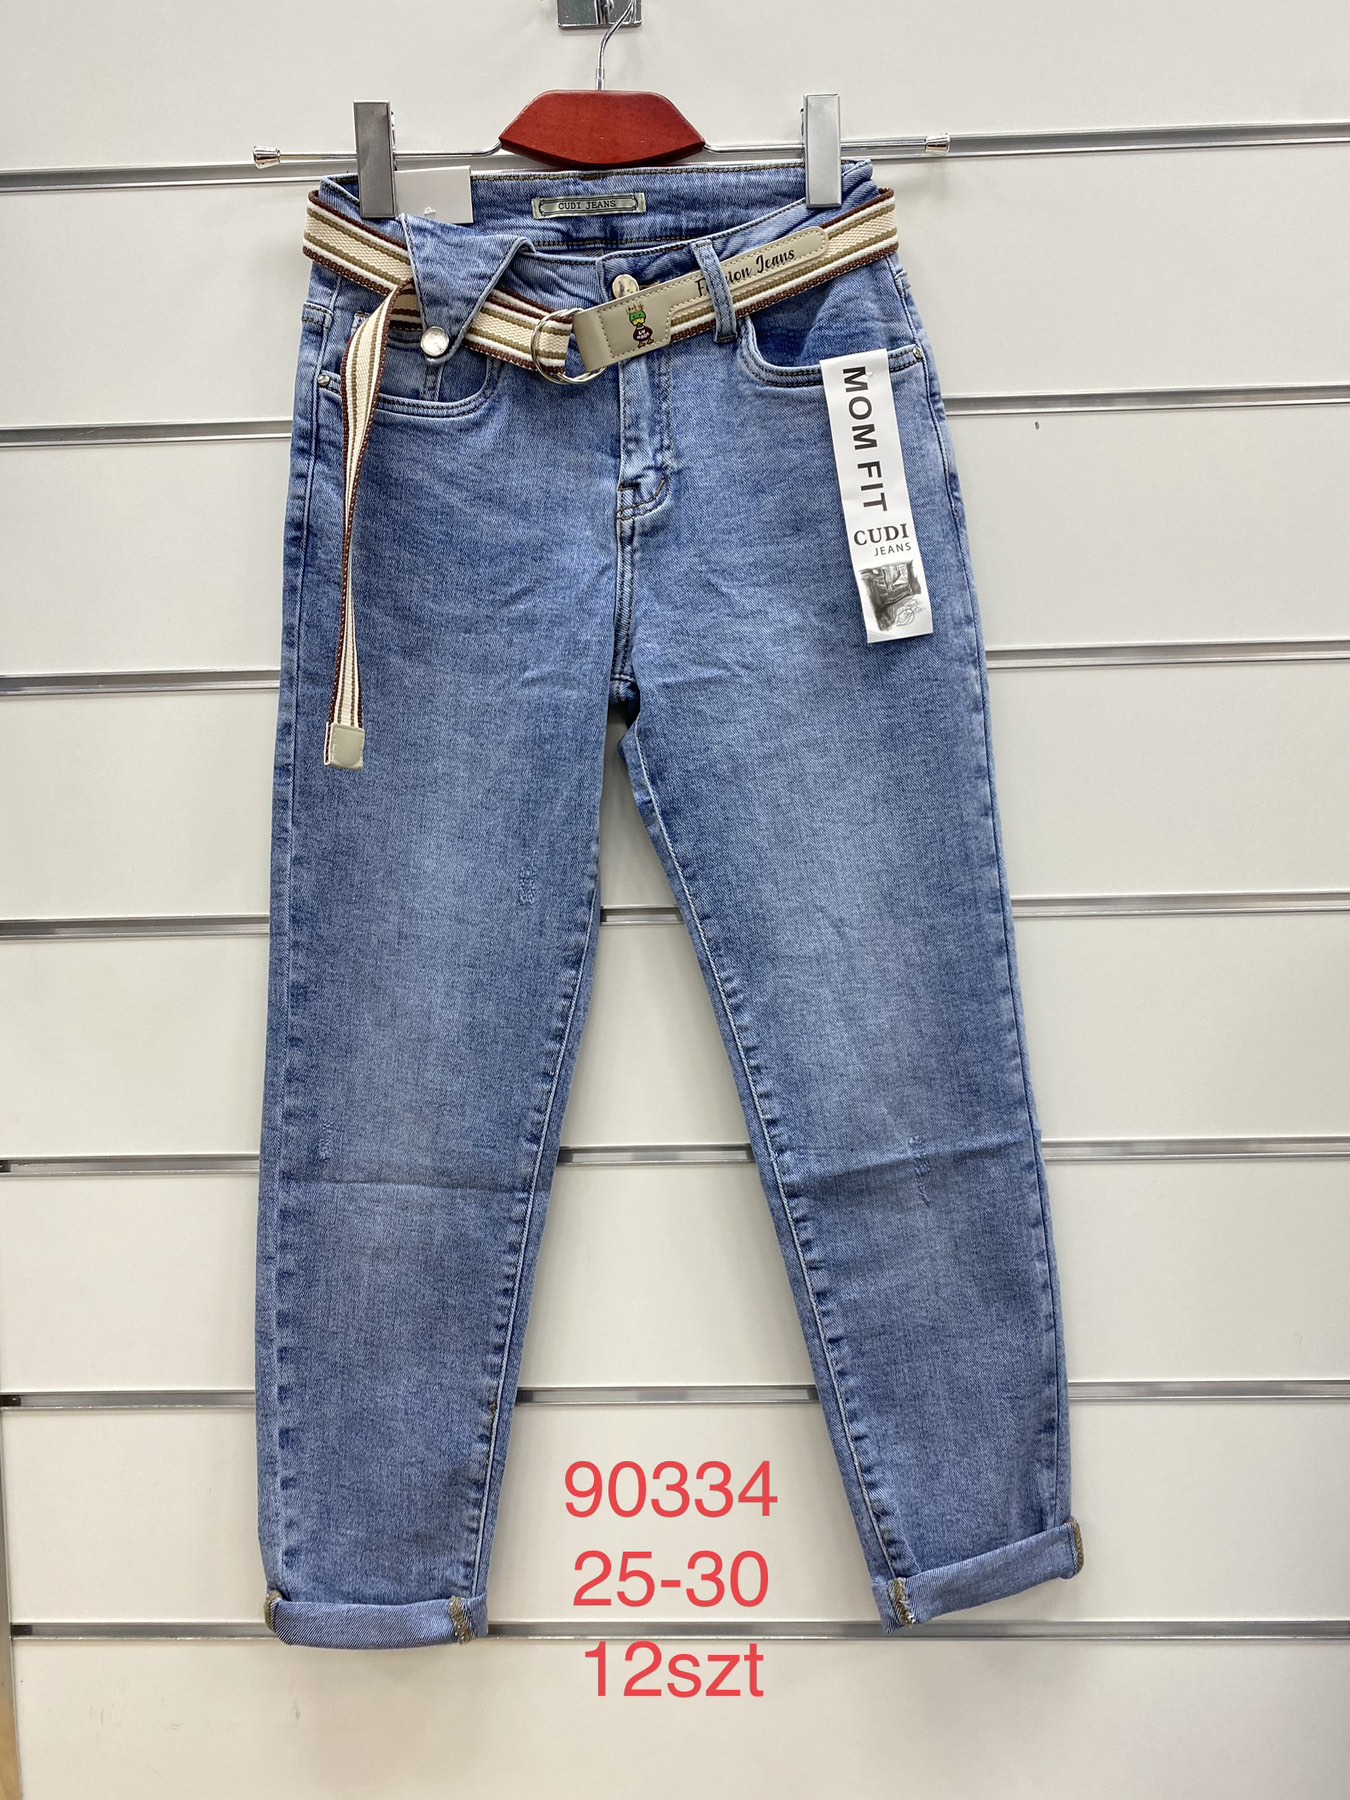 Spodnie damskie jeans Roz 295-30.  Paczka 12szt